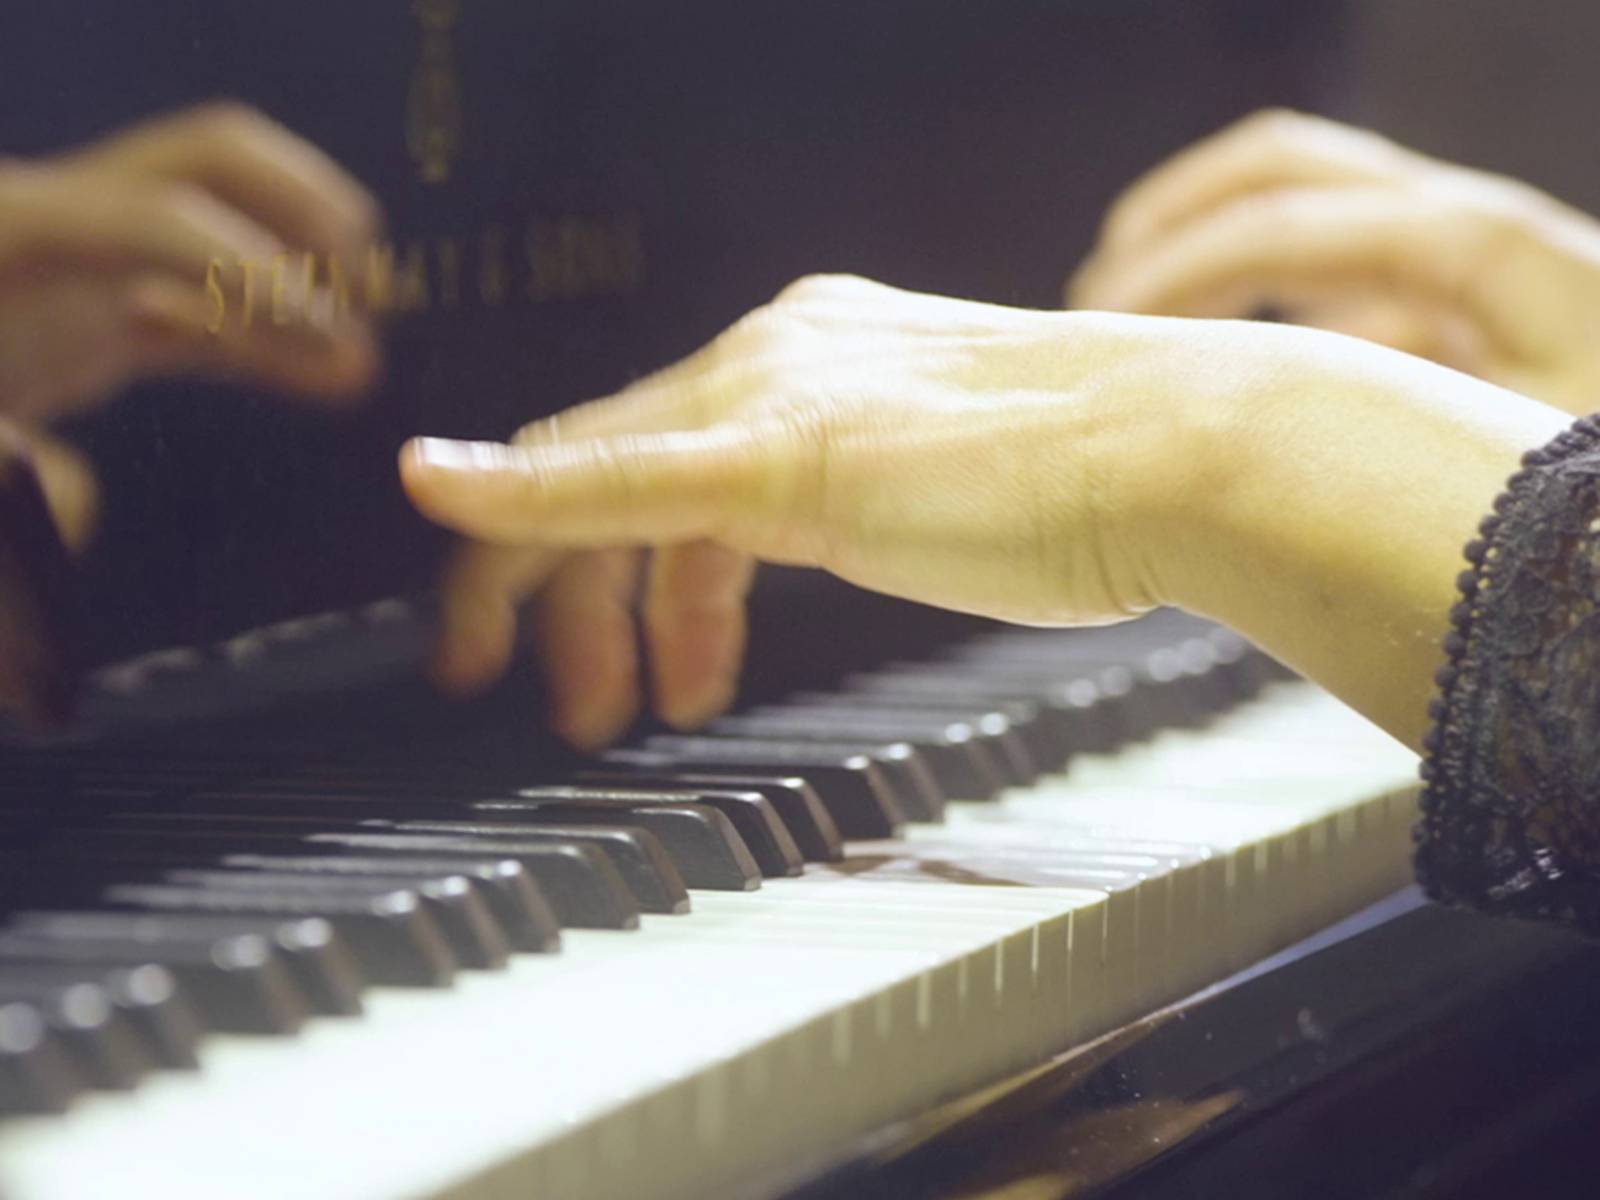 Klavierspielende Hände